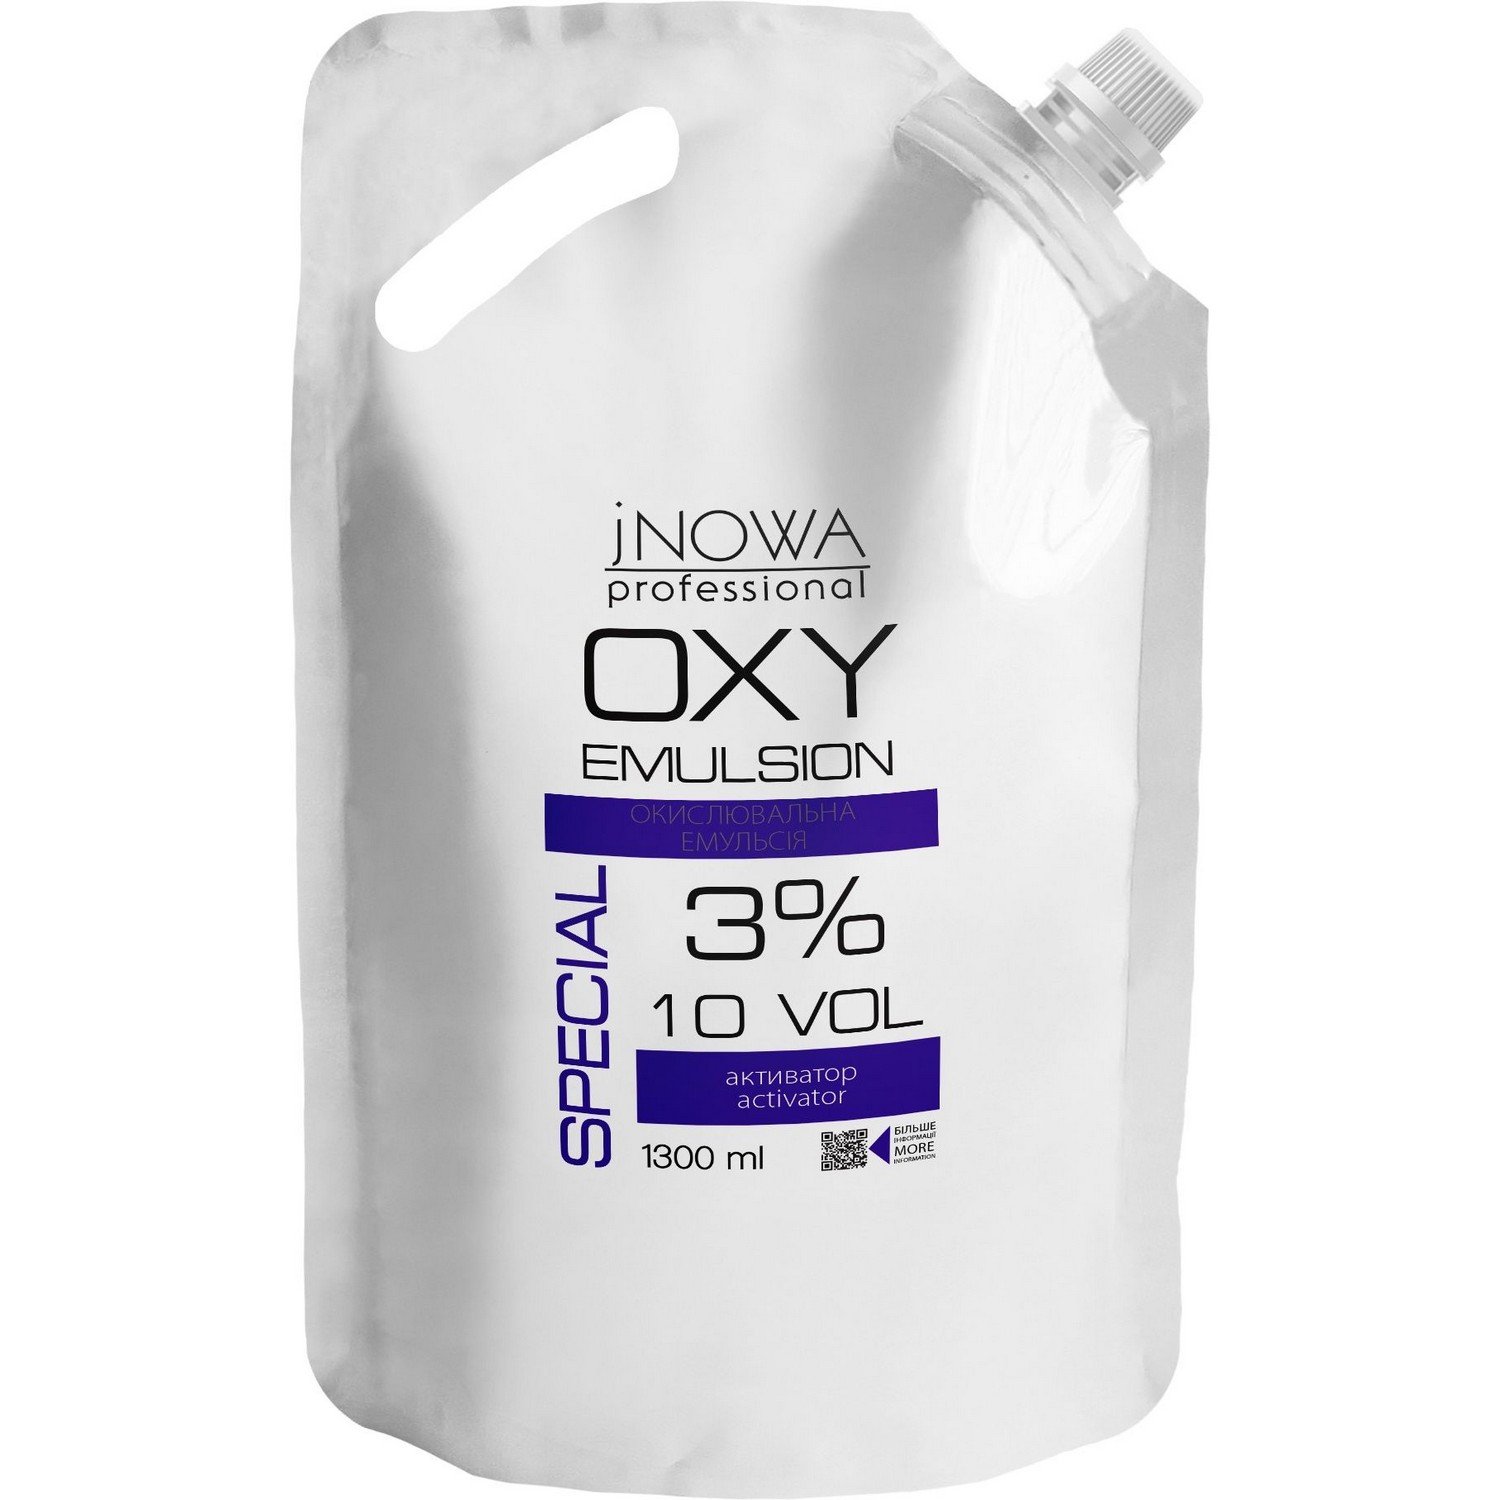 Окислительная эмульсия jNOWA Professional Special OXY 3%, 10 vol, 1300 мл - фото 1